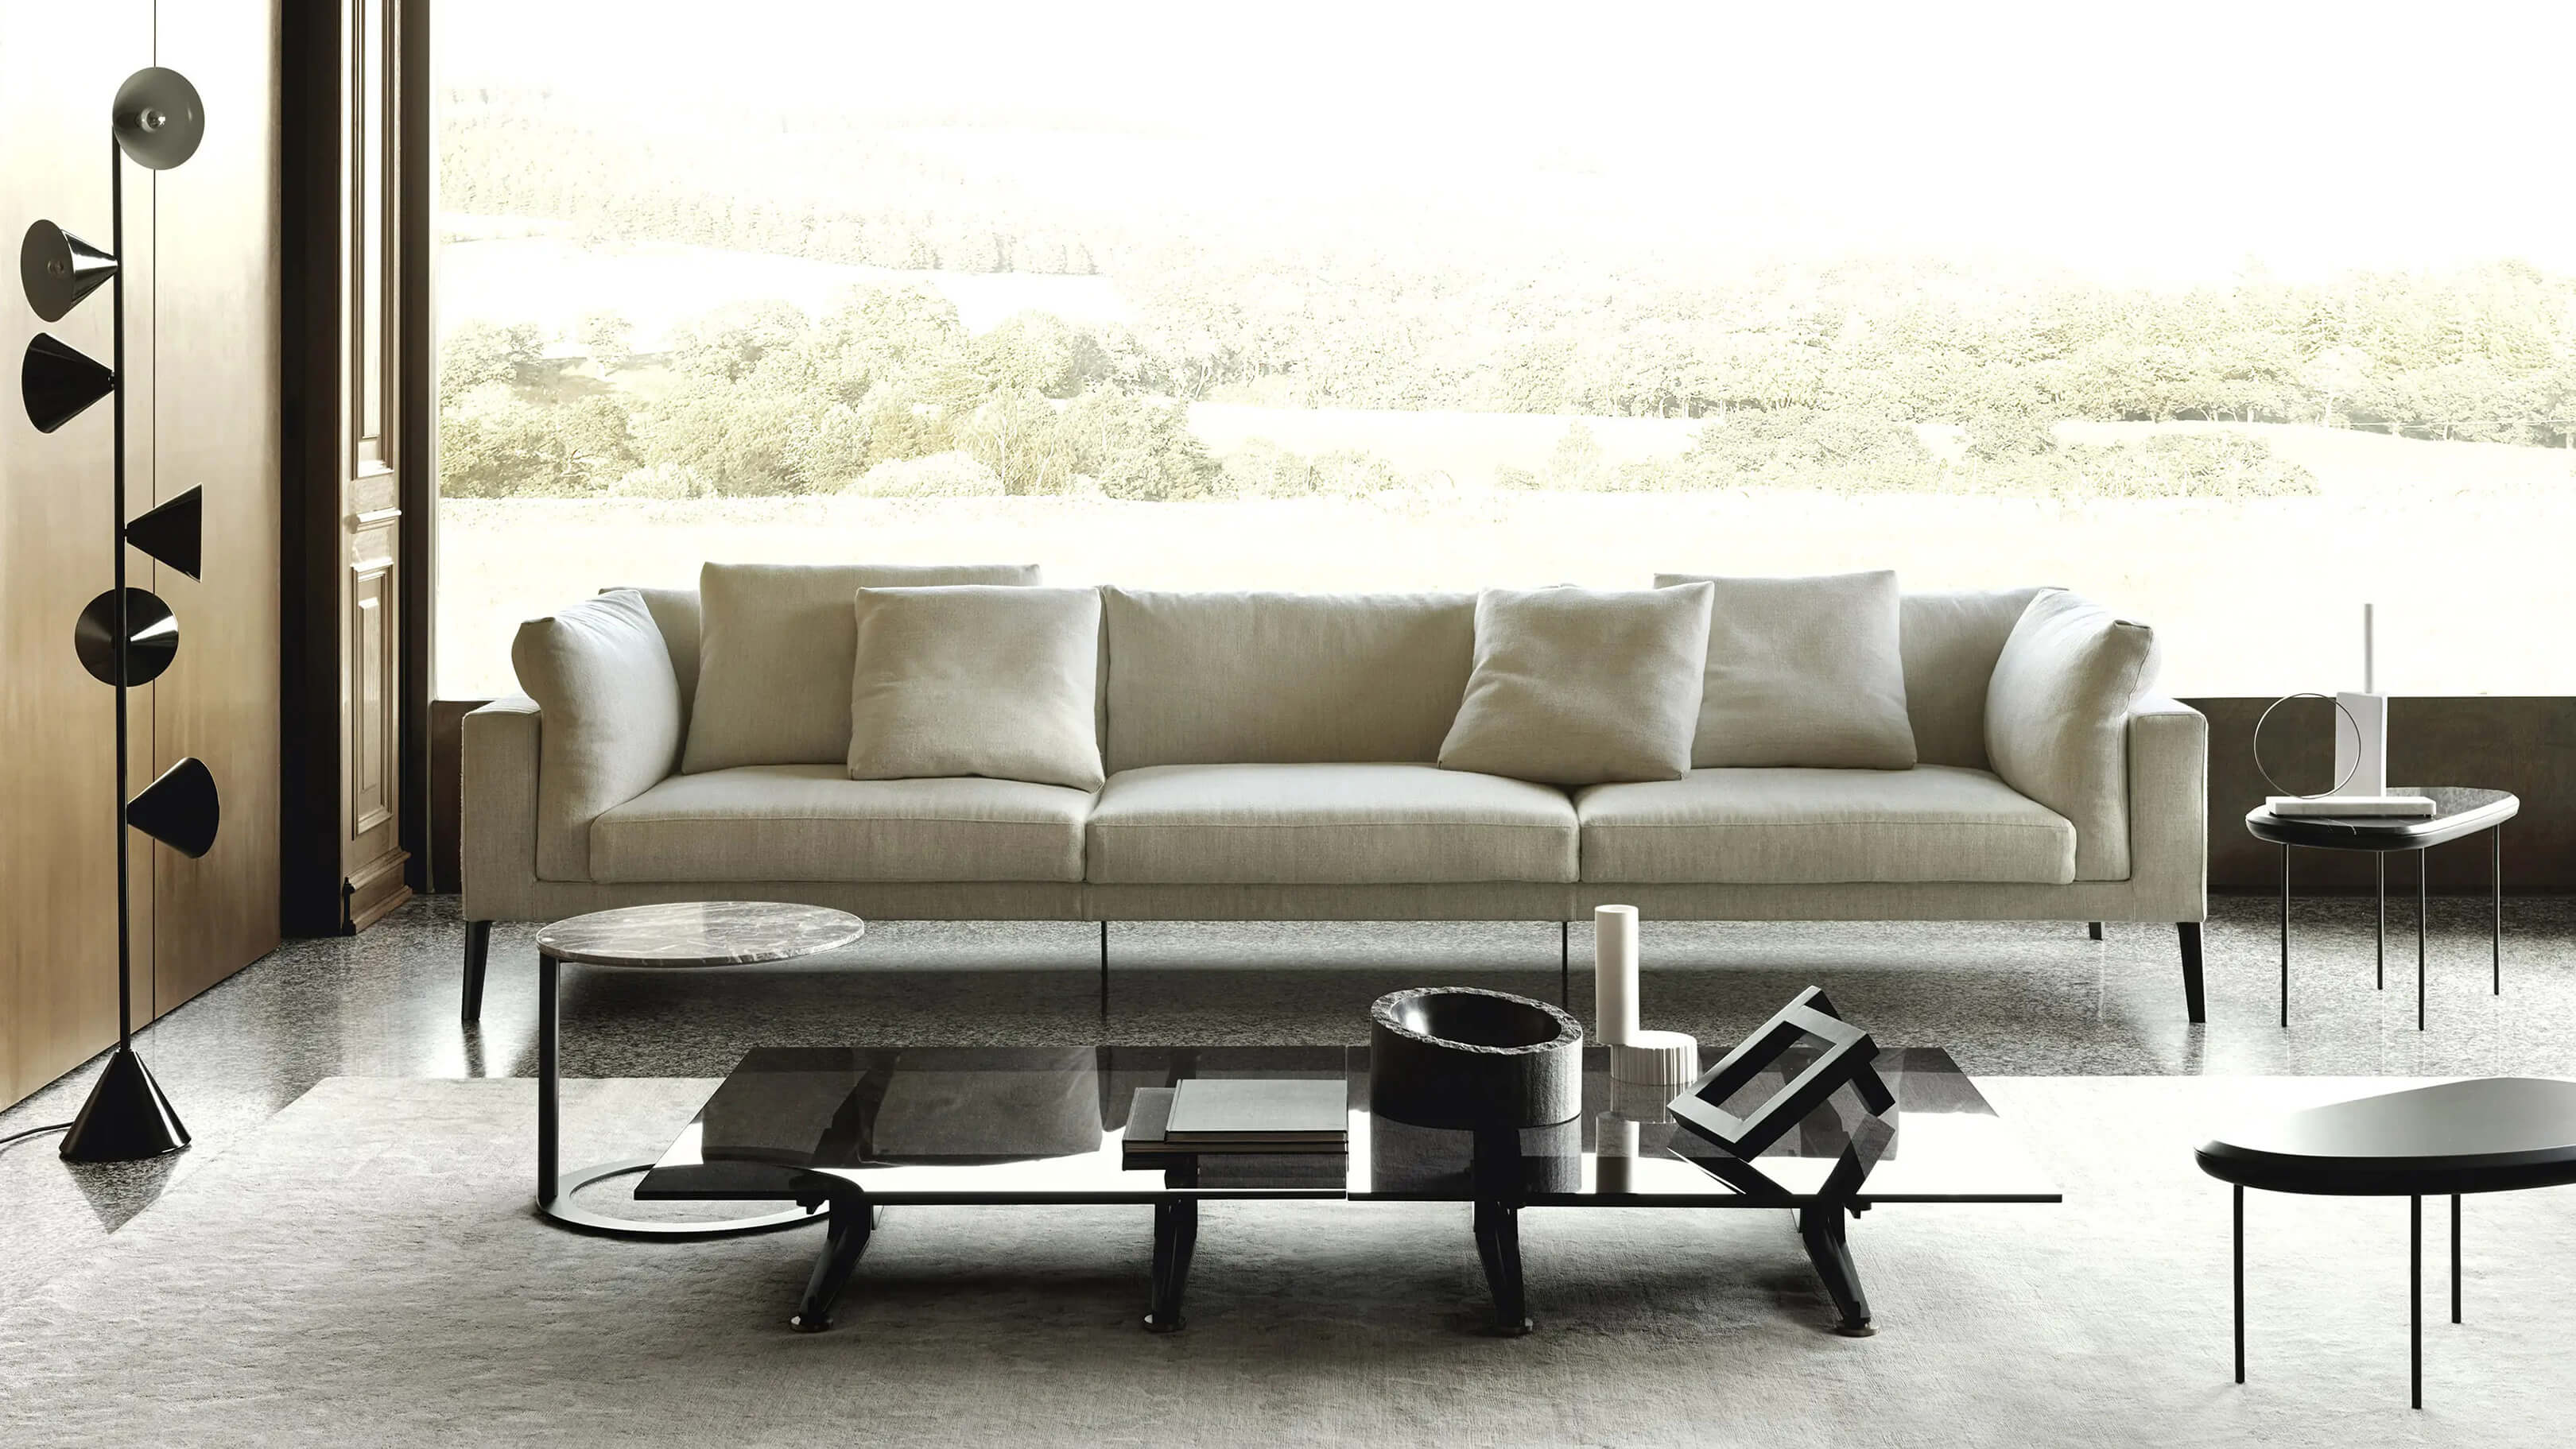 Living Divani Extrasoft Sofa by Piero Lissoni